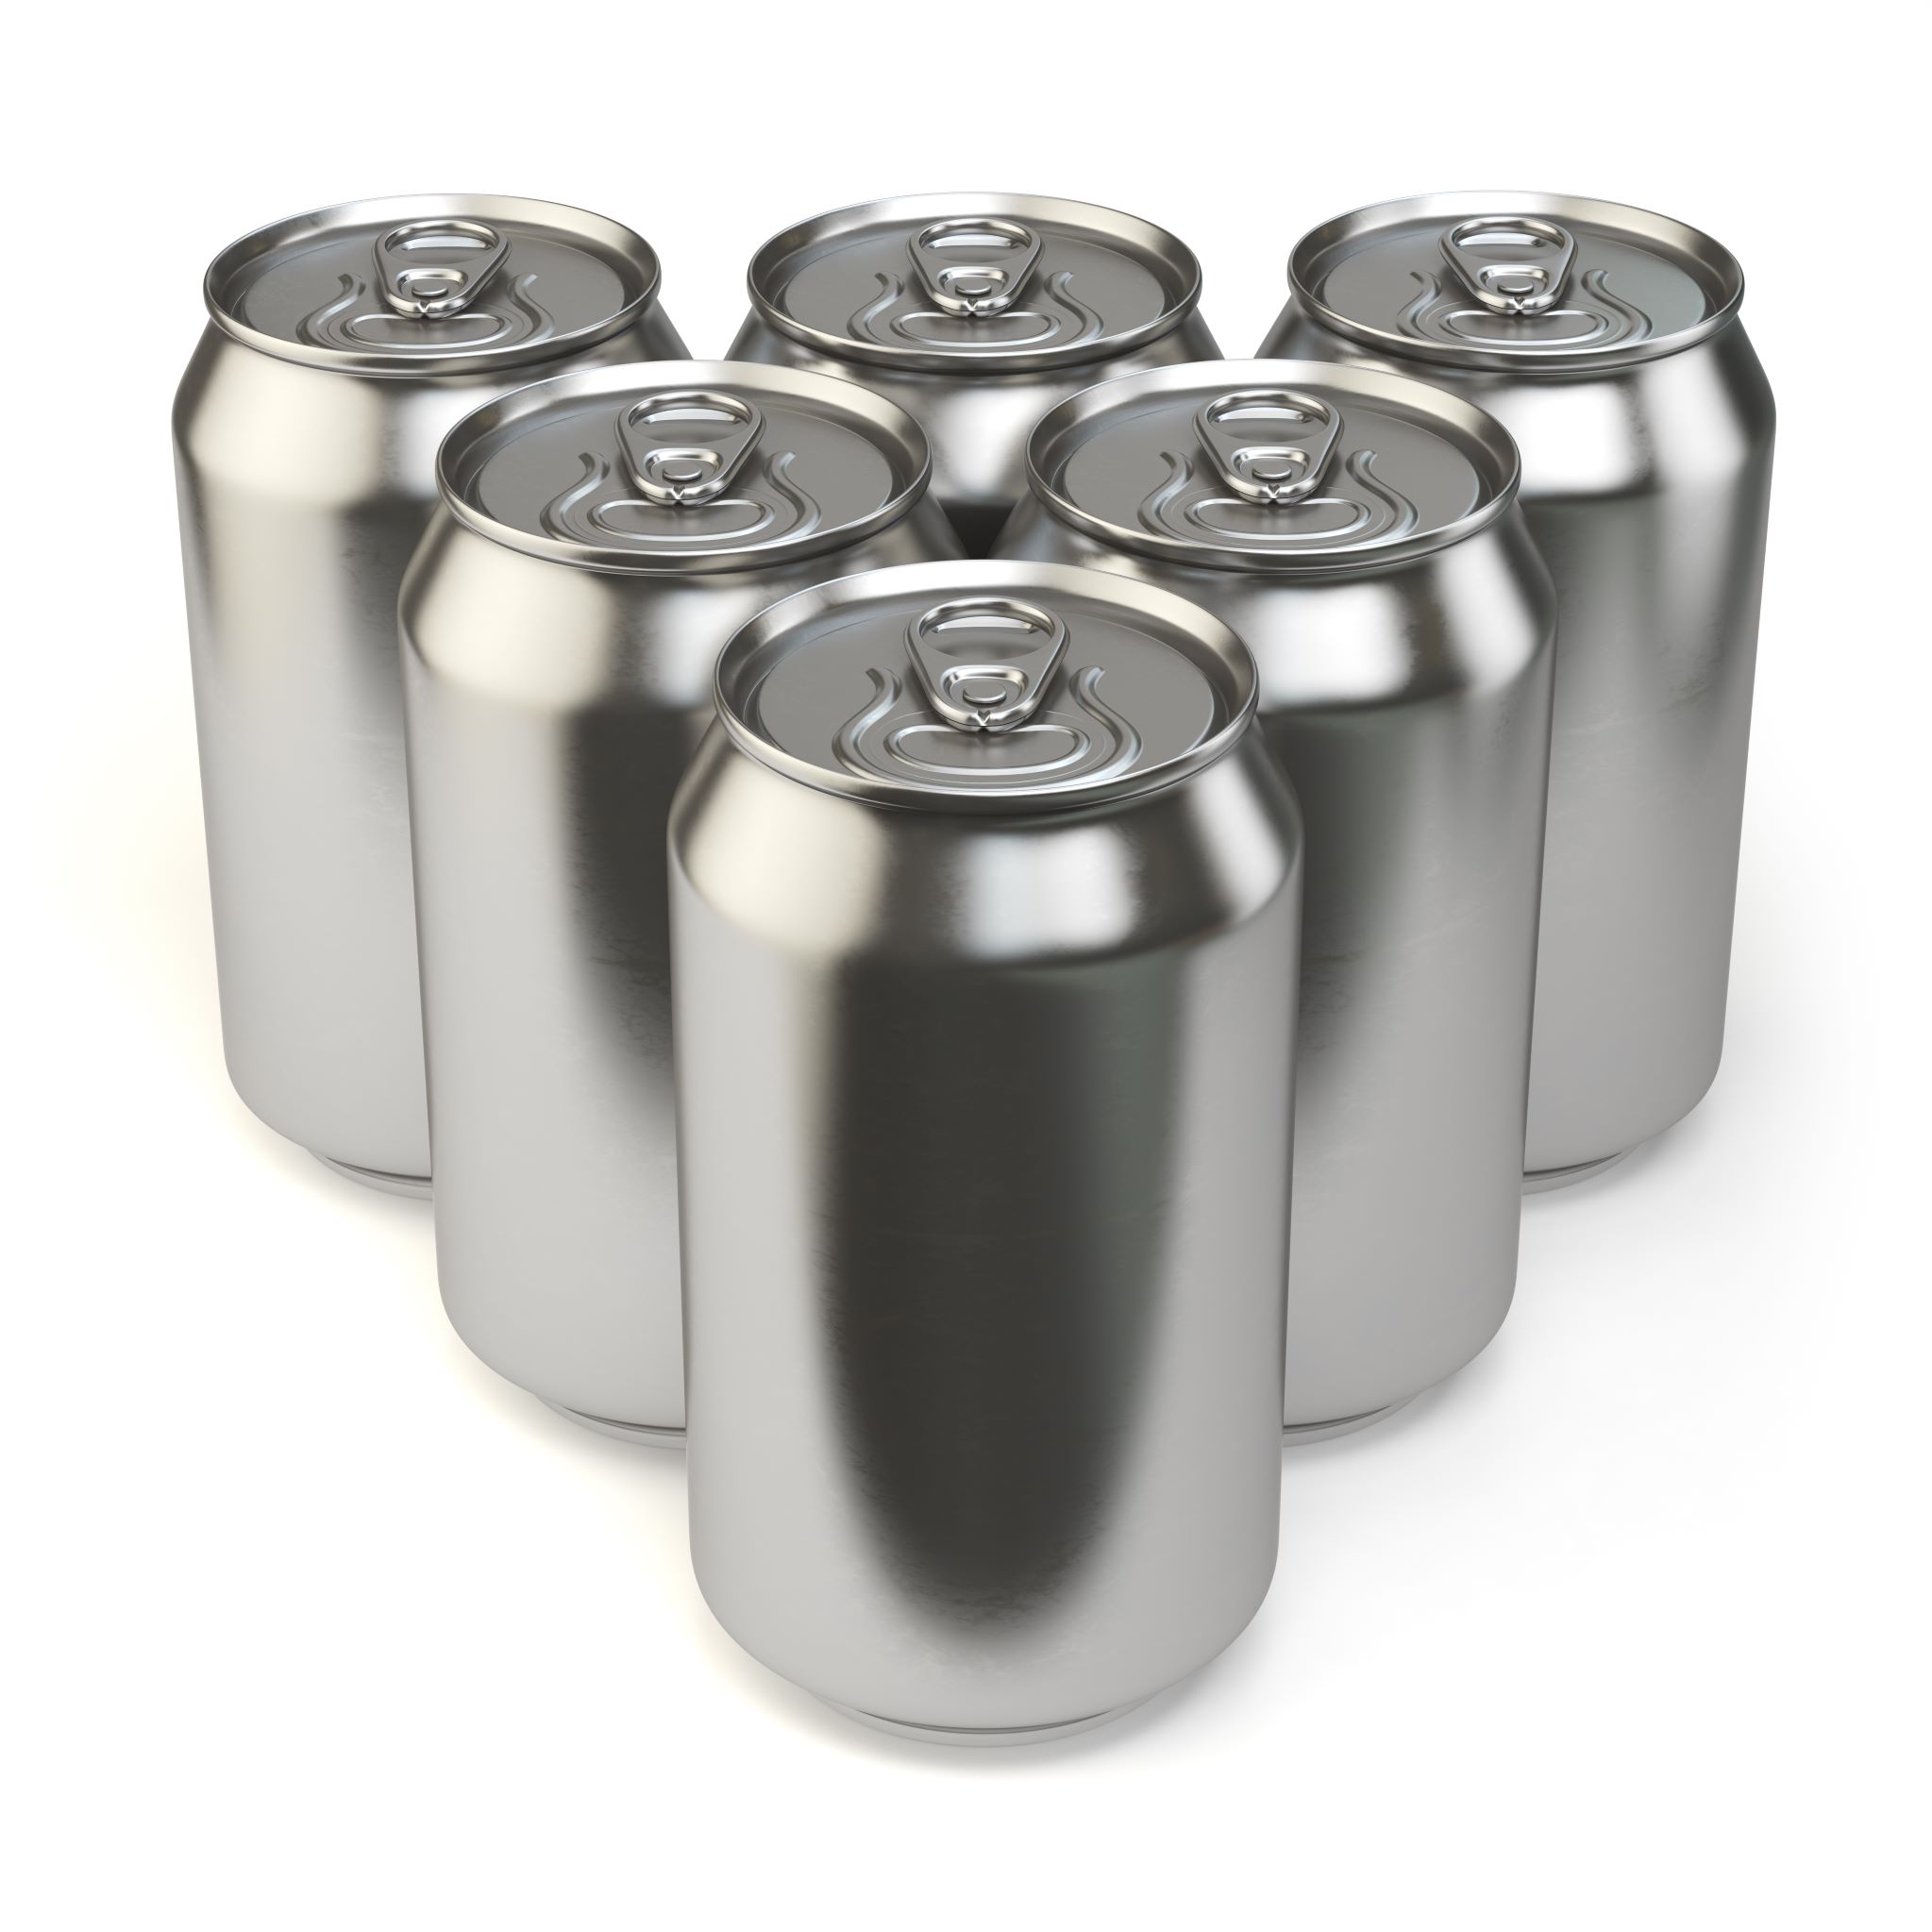 aluminium cans, Shutterstock